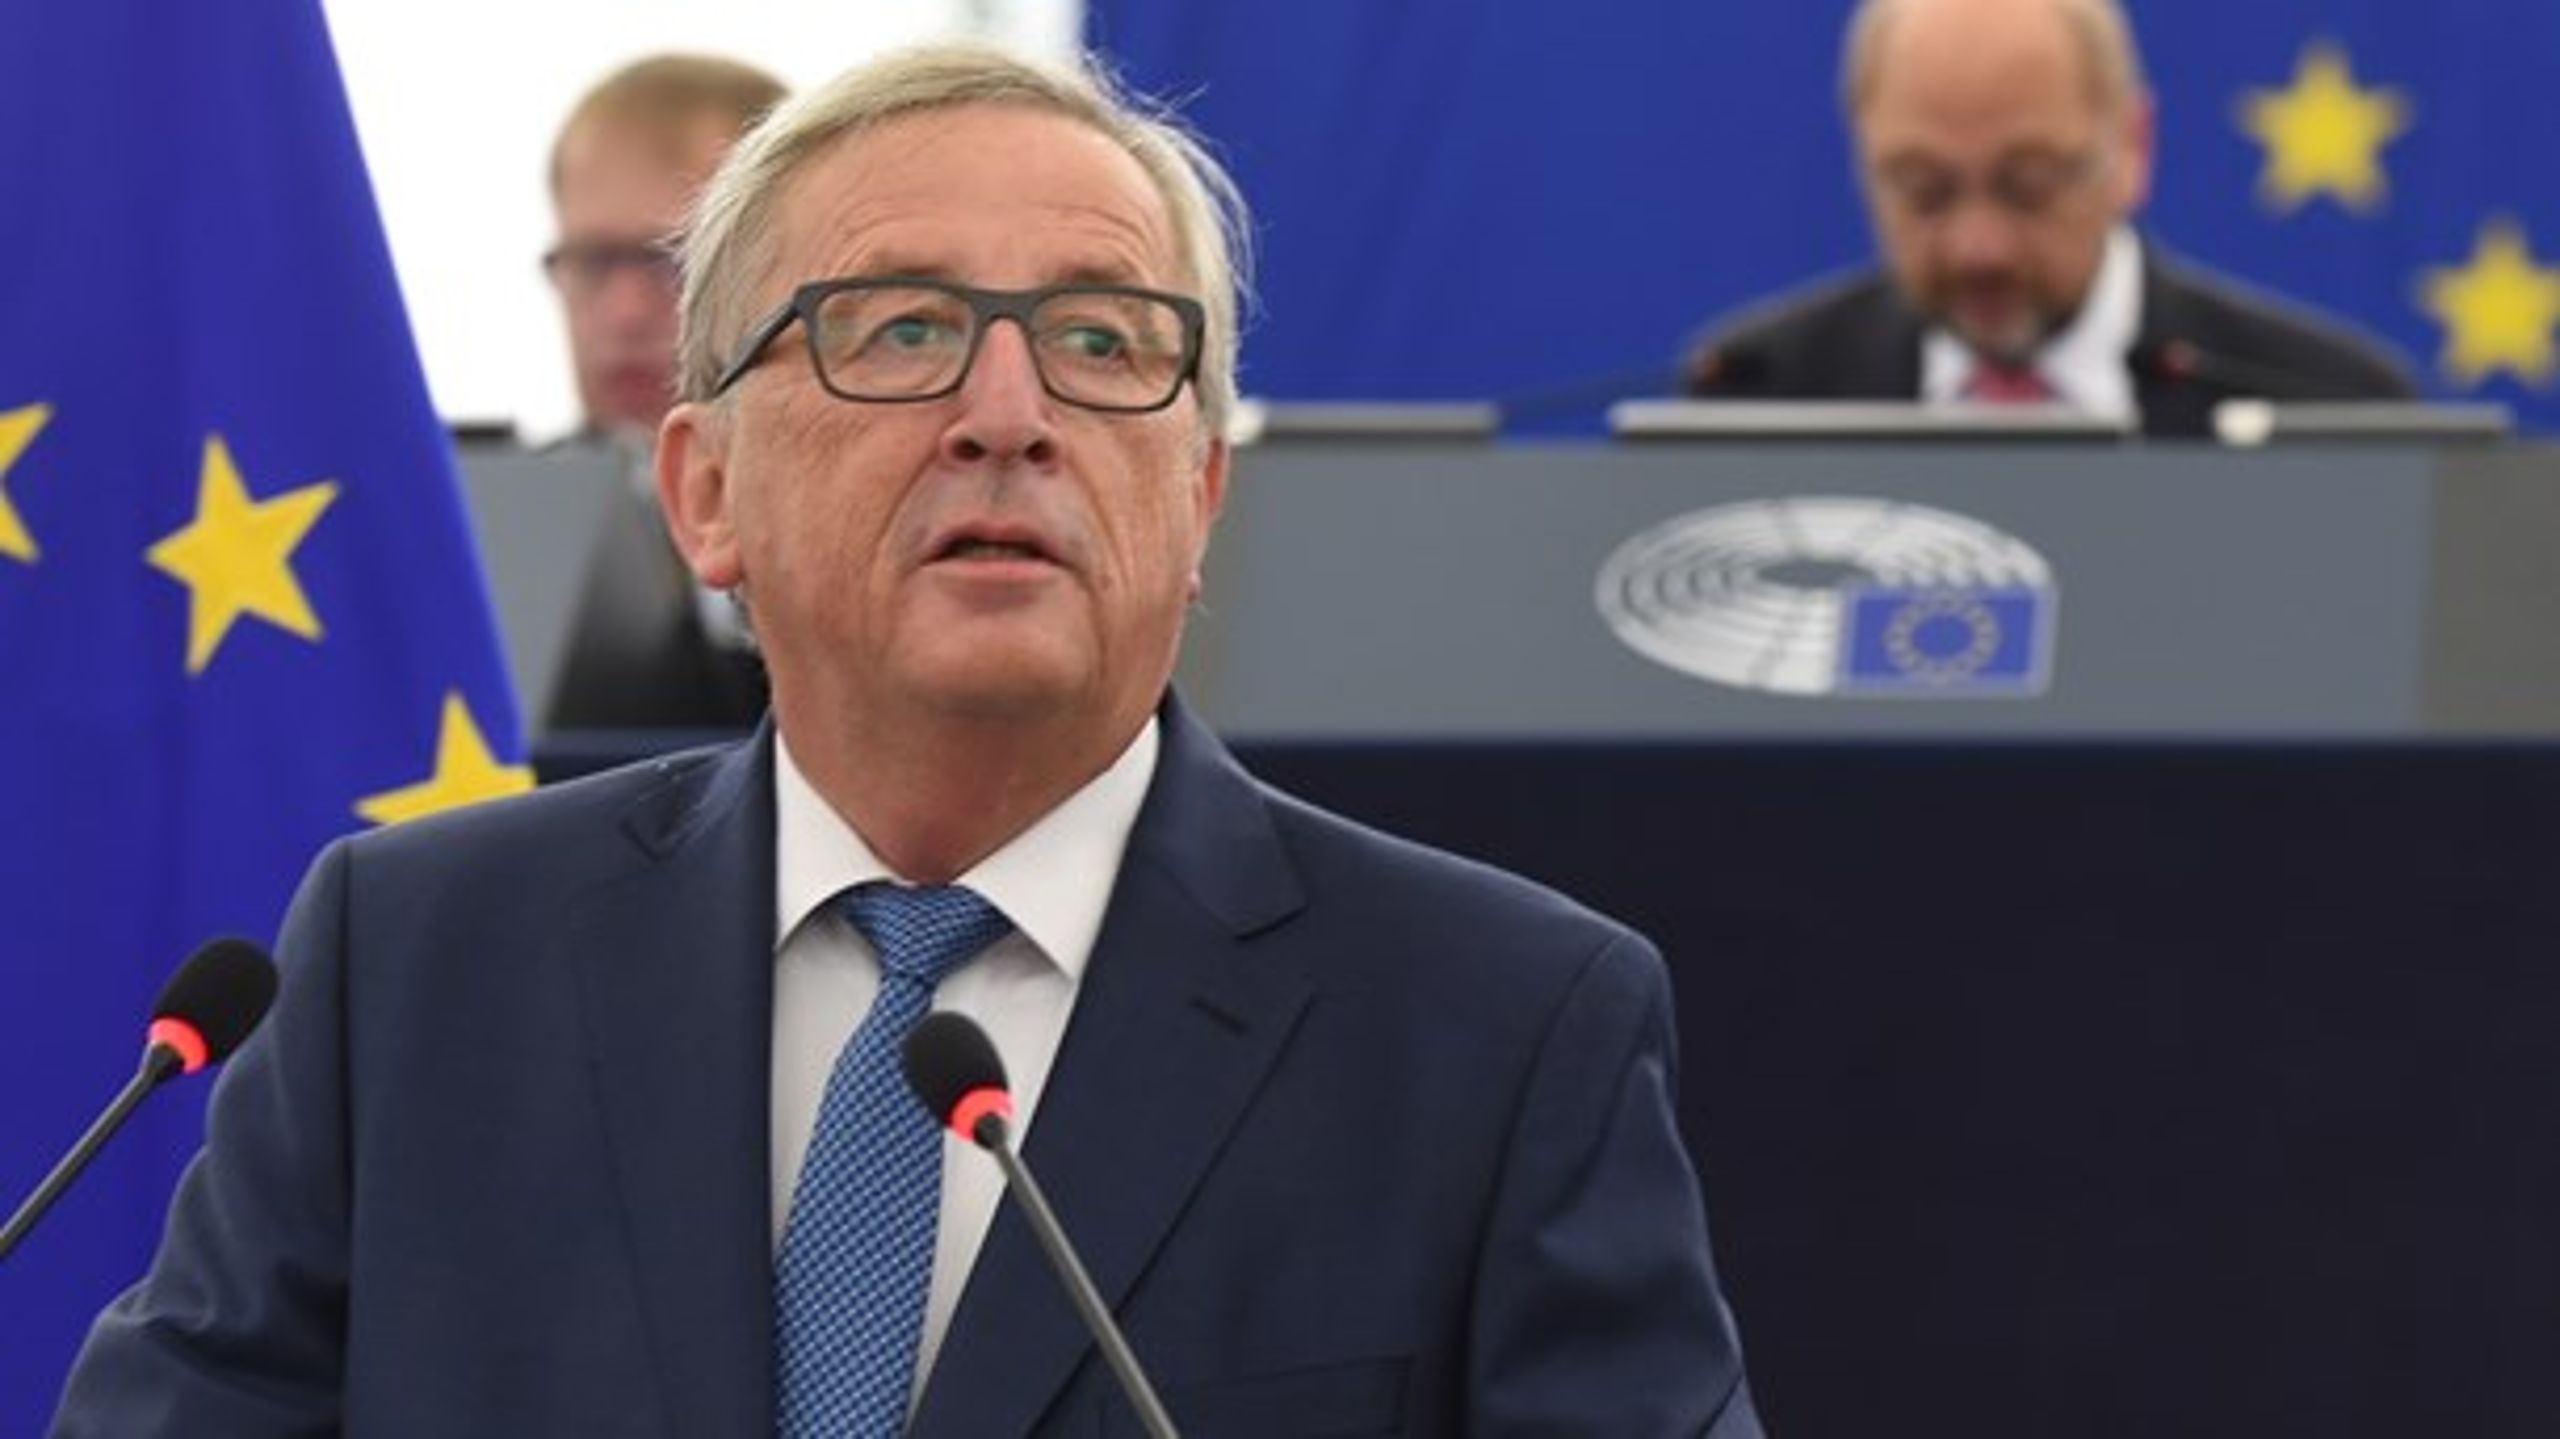 Kommisionen har med formand Jean-Claude Juncker i spidsen besluttet at&nbsp;øge EU's budgetter de kommende år. Det betyder flere penge til kamp mod arbejdsløshed og migration.